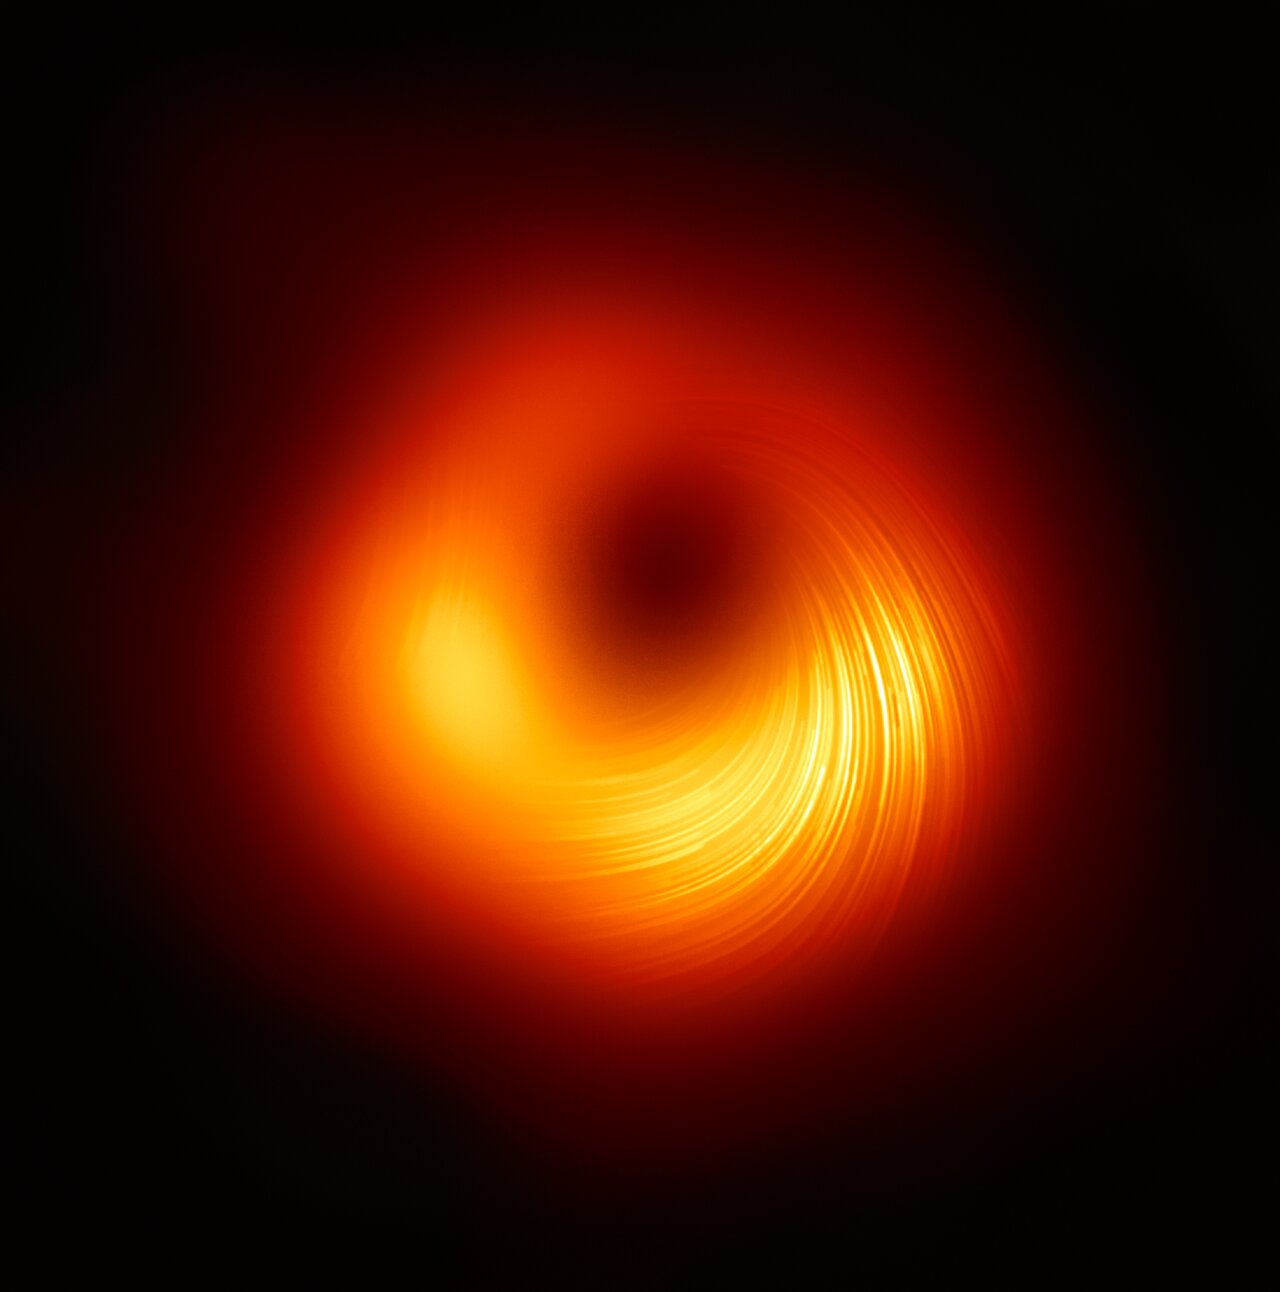 Un equipo de astrónomos obtiene una imagen de los campos magnéticos presentes en los límites del agujero negro de M87